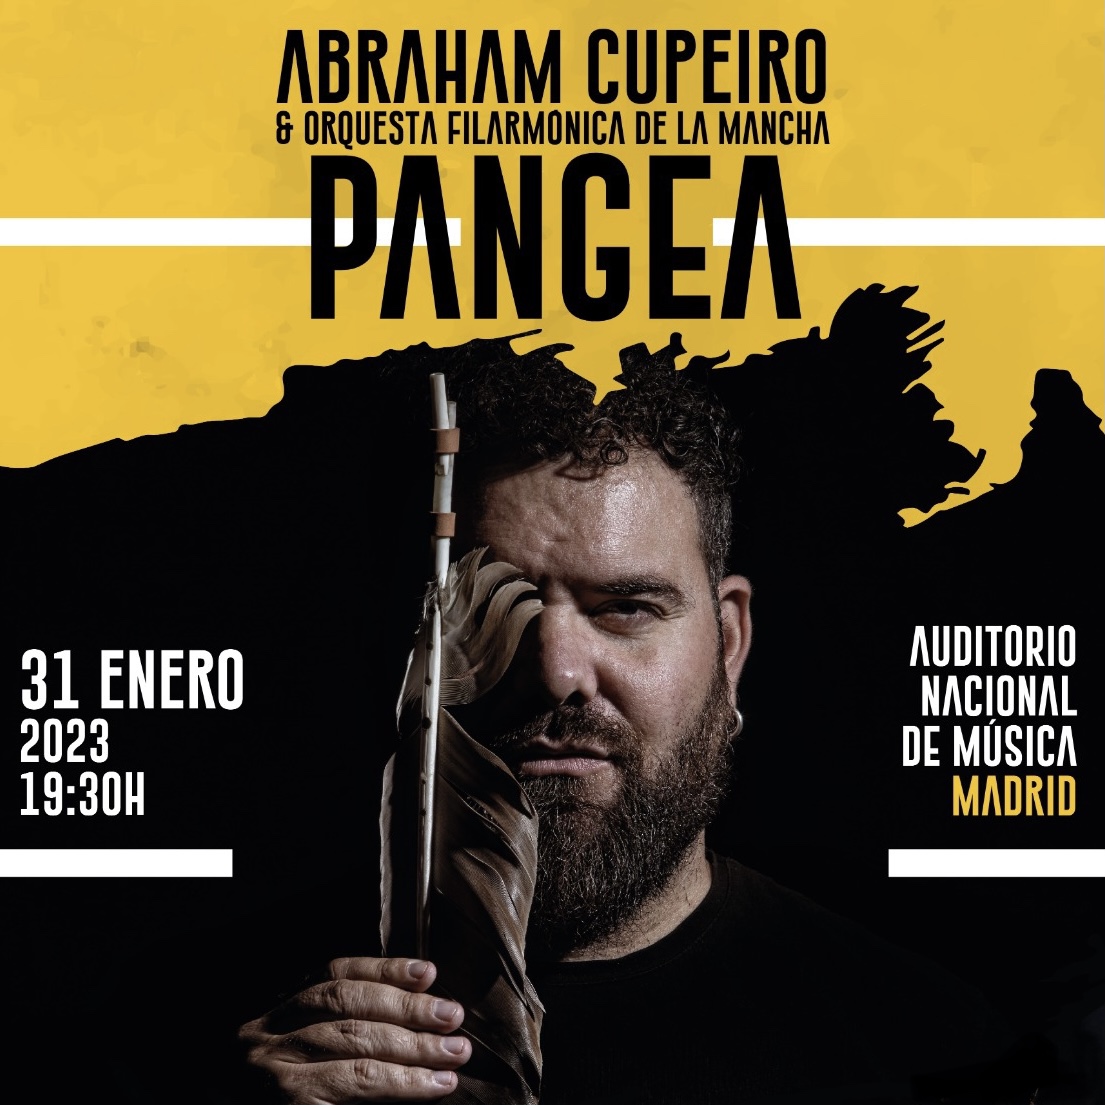 Cartel promocional de "Pangea", Abraham Cupeiro con la Orquesta Filarmónica de La Mancha 